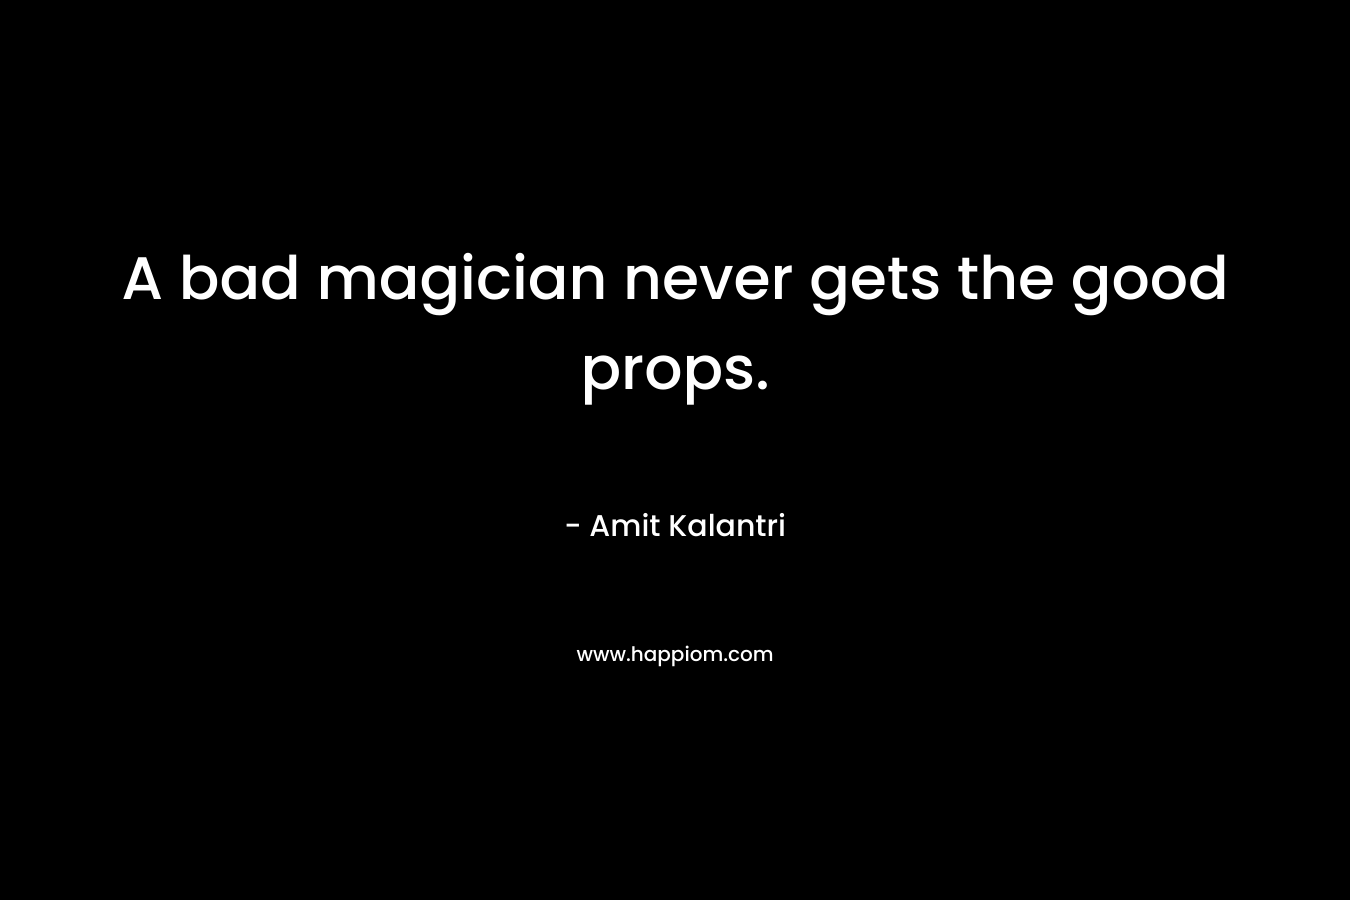 A bad magician never gets the good props.